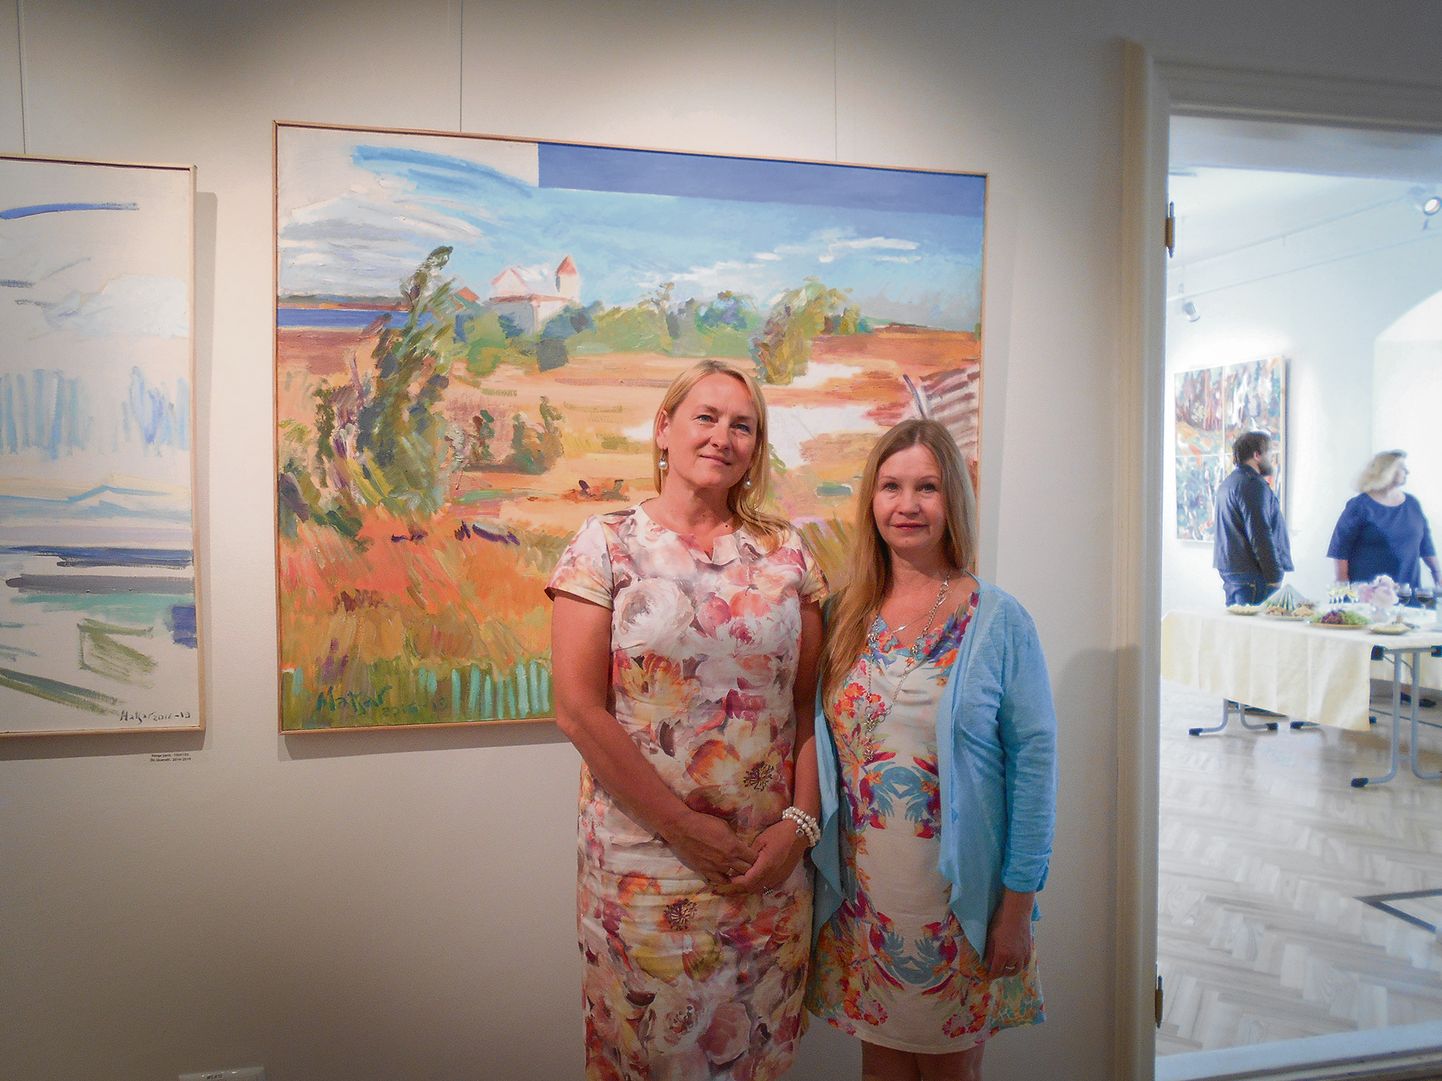 LÕPMATUSE MÄRGISTUS: Saaremaa valla kultuuritööspetsialist Anneli Teppo-Toost ja kunstnik Maie Matsar jäid pildile koos kingitud teosega.